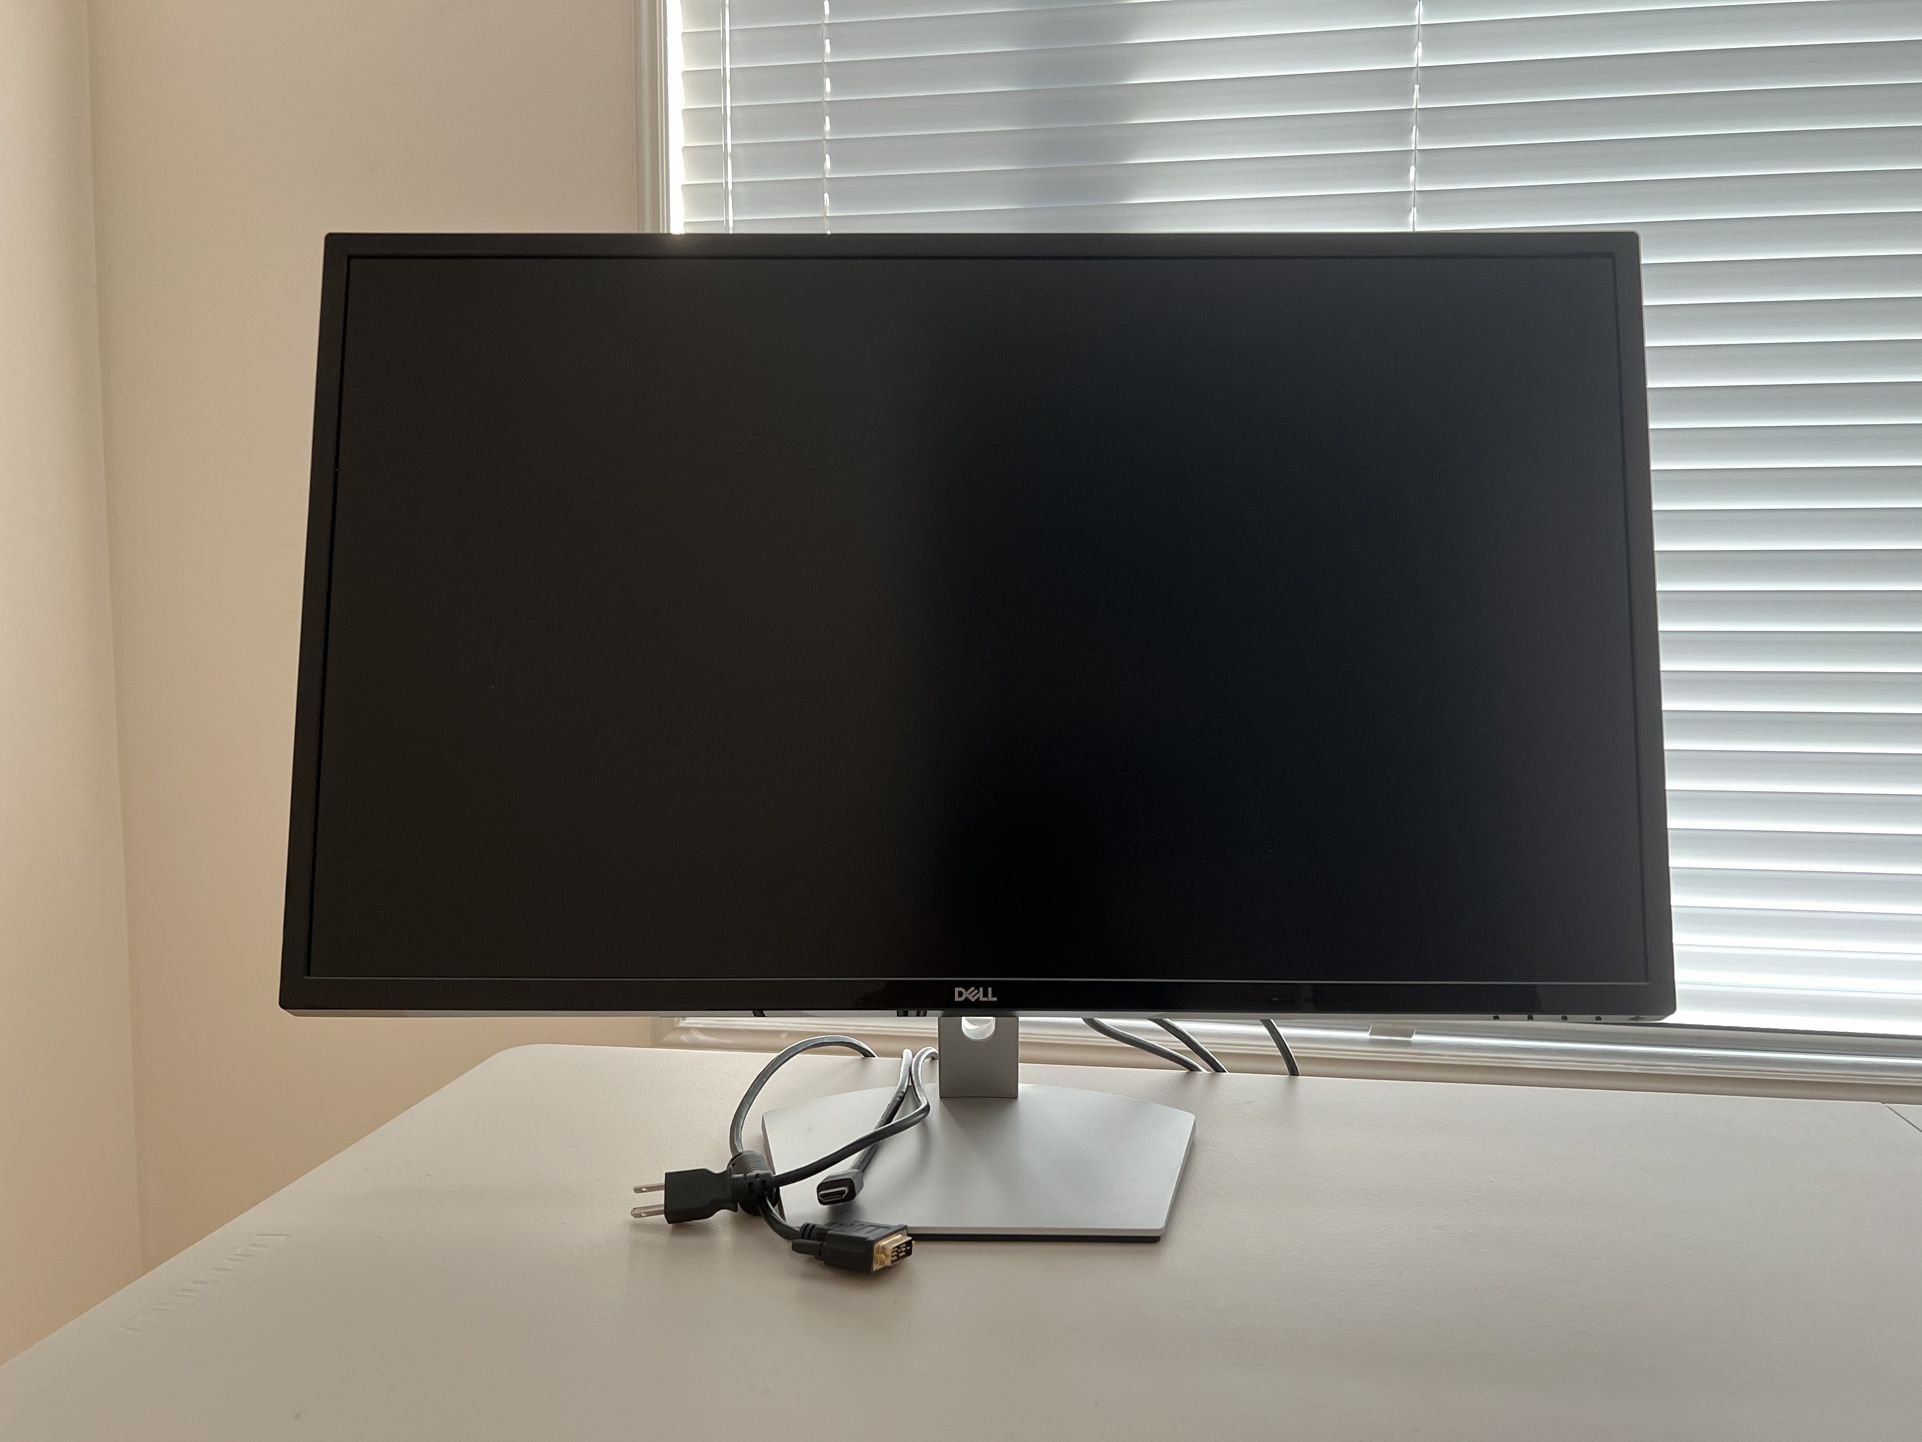 Dell 32” Monitor S Series 2560 X 1440 60 Hz